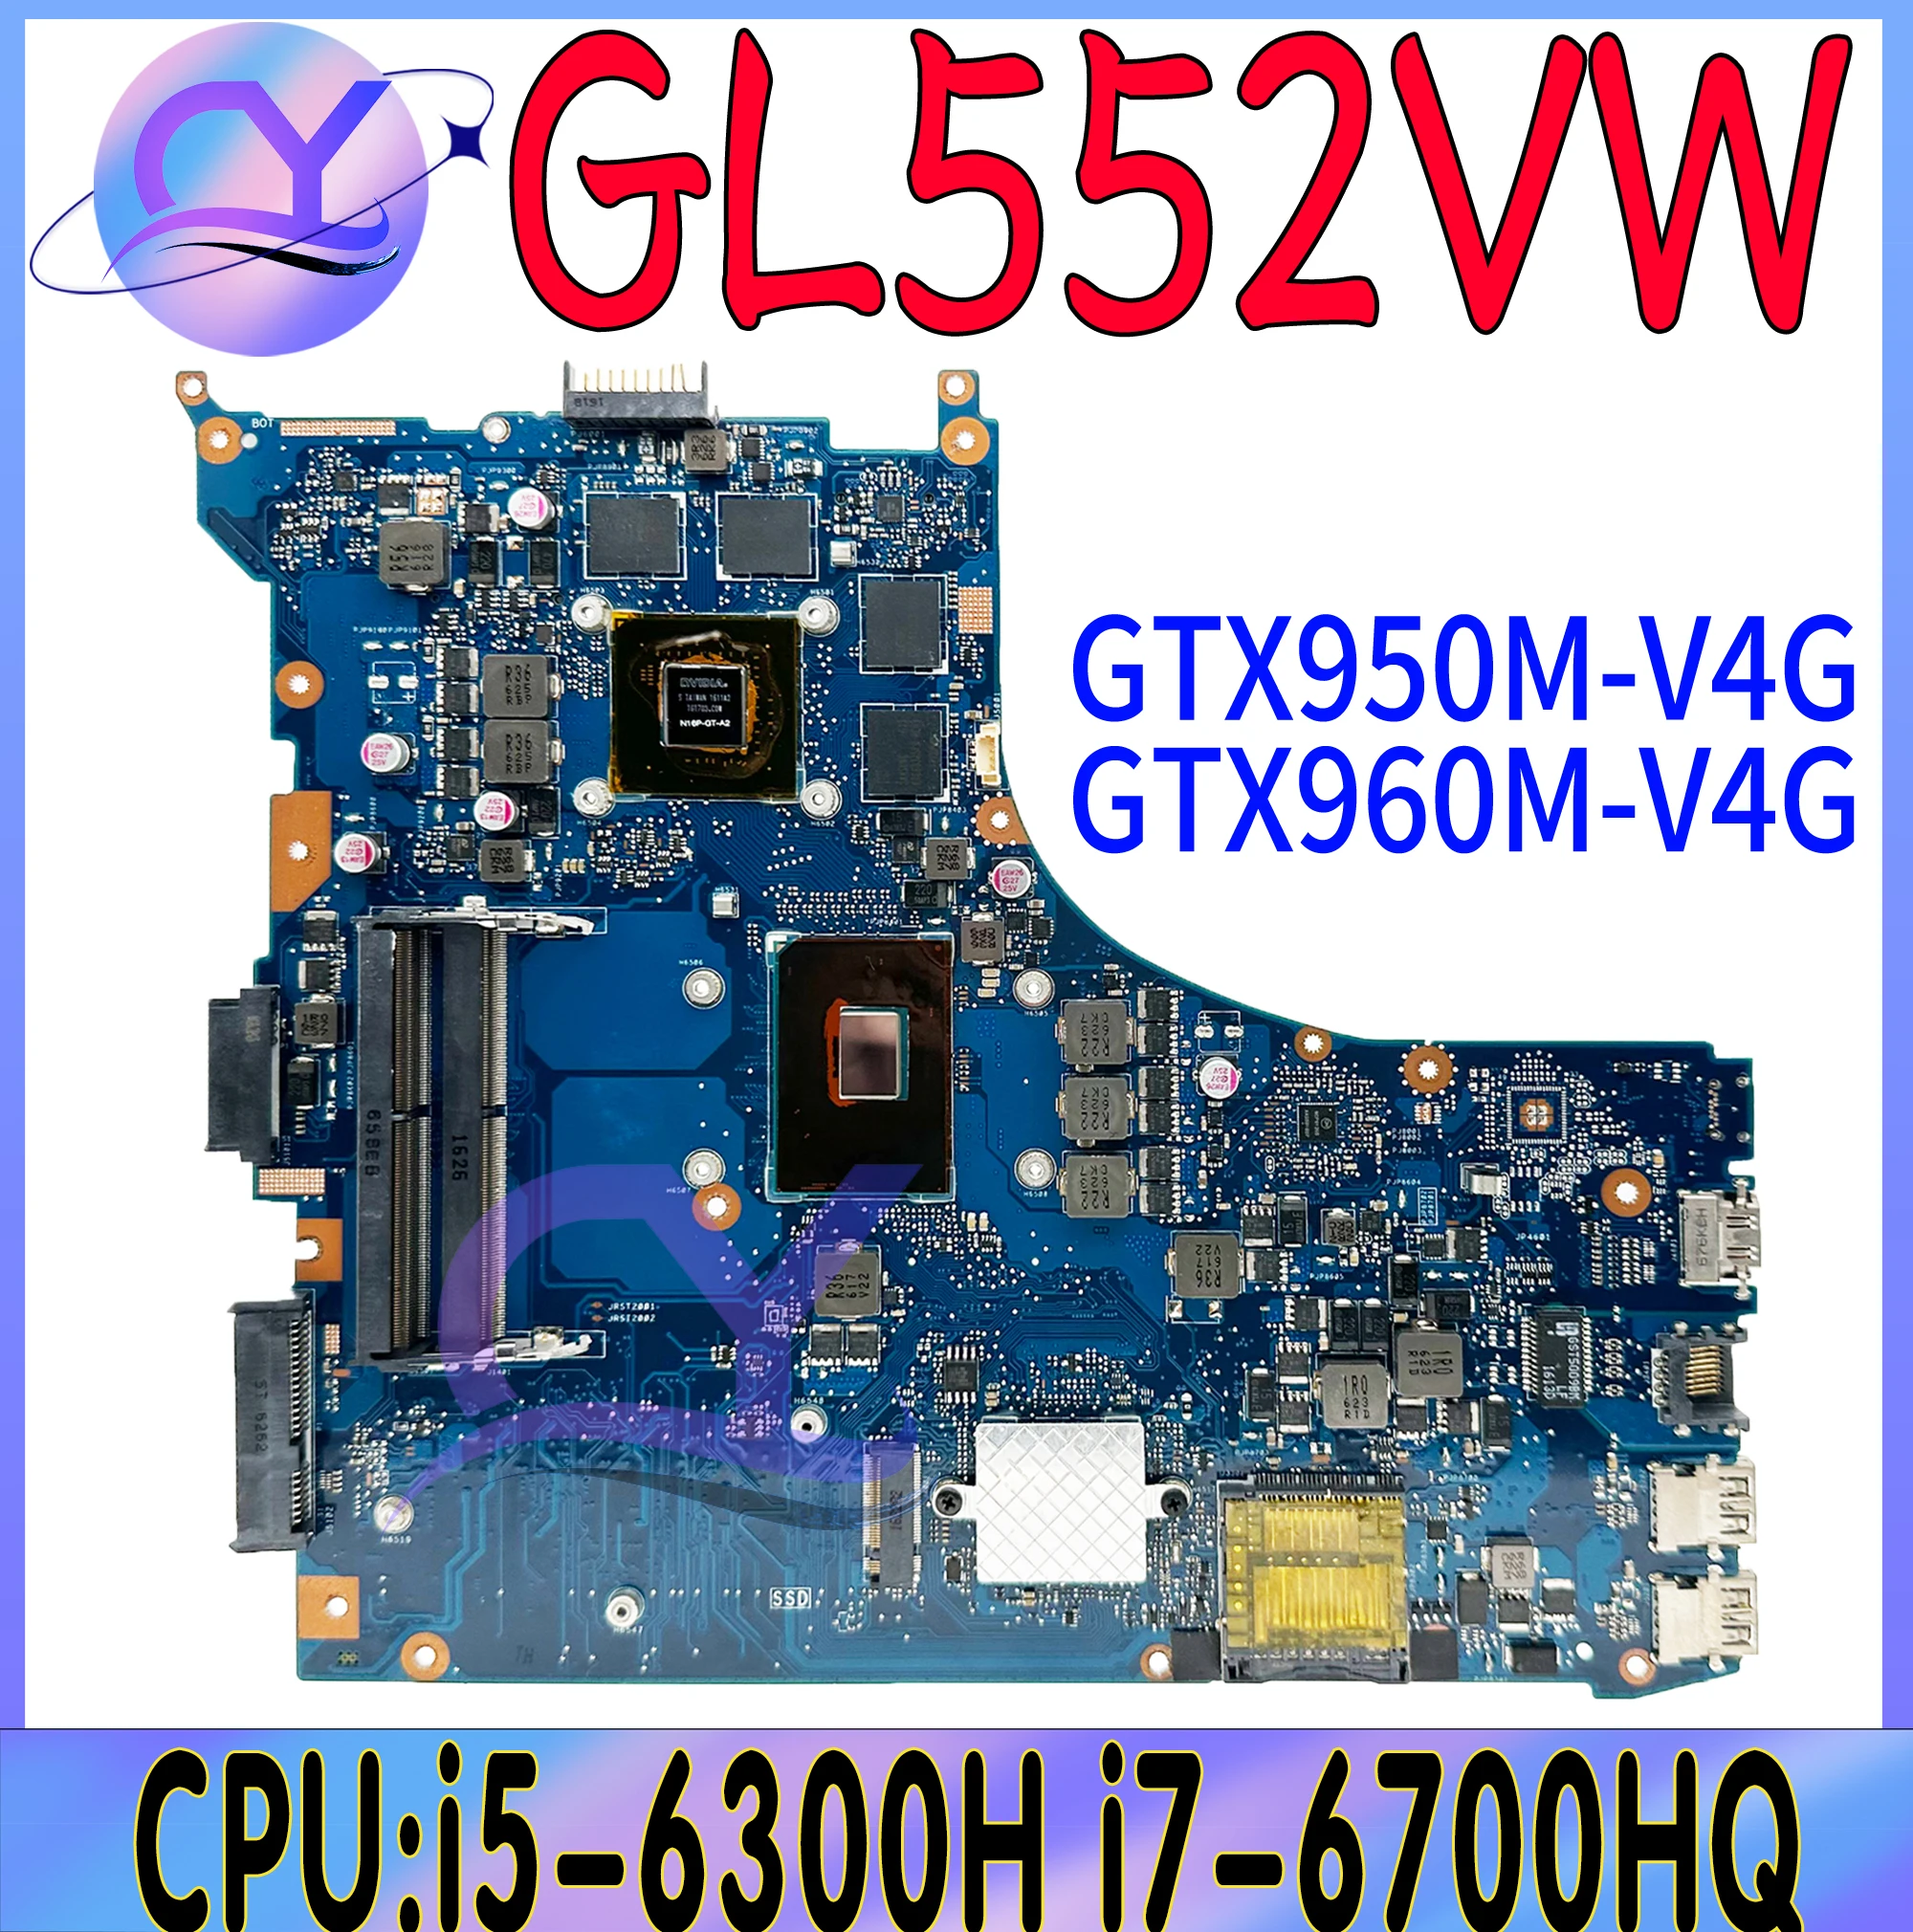 

GL552V Laptop Motherboard For ASUS ROG GL552VW GL552VX GL552VXK I5-6300HQ I7-6700HQ I7-7700HQ GTX950 Mainboard 100% Working